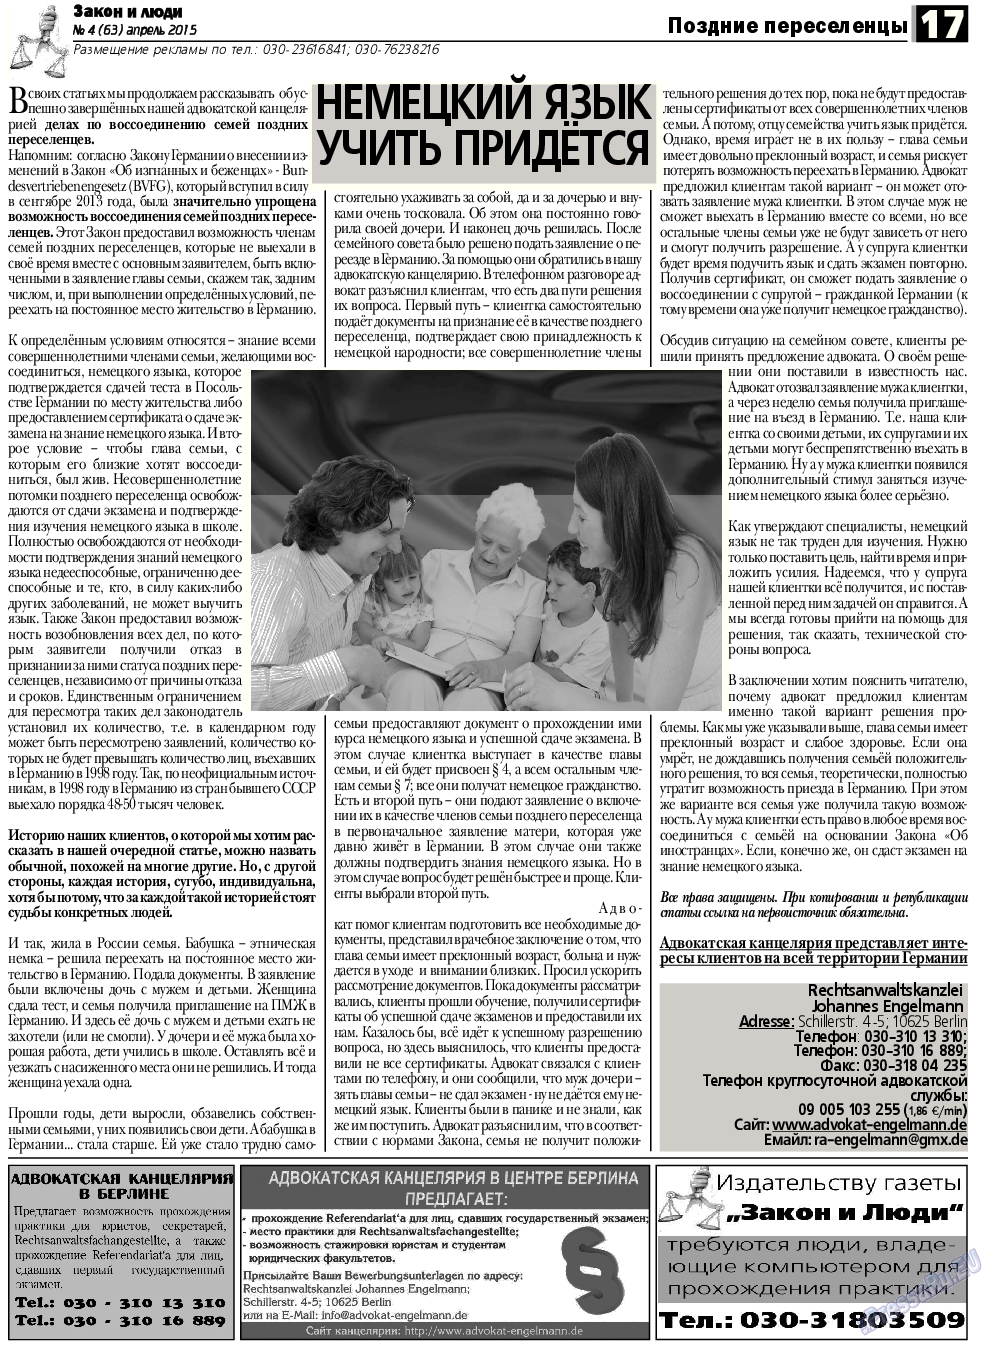 Закон и люди, газета. 2015 №4 стр.17